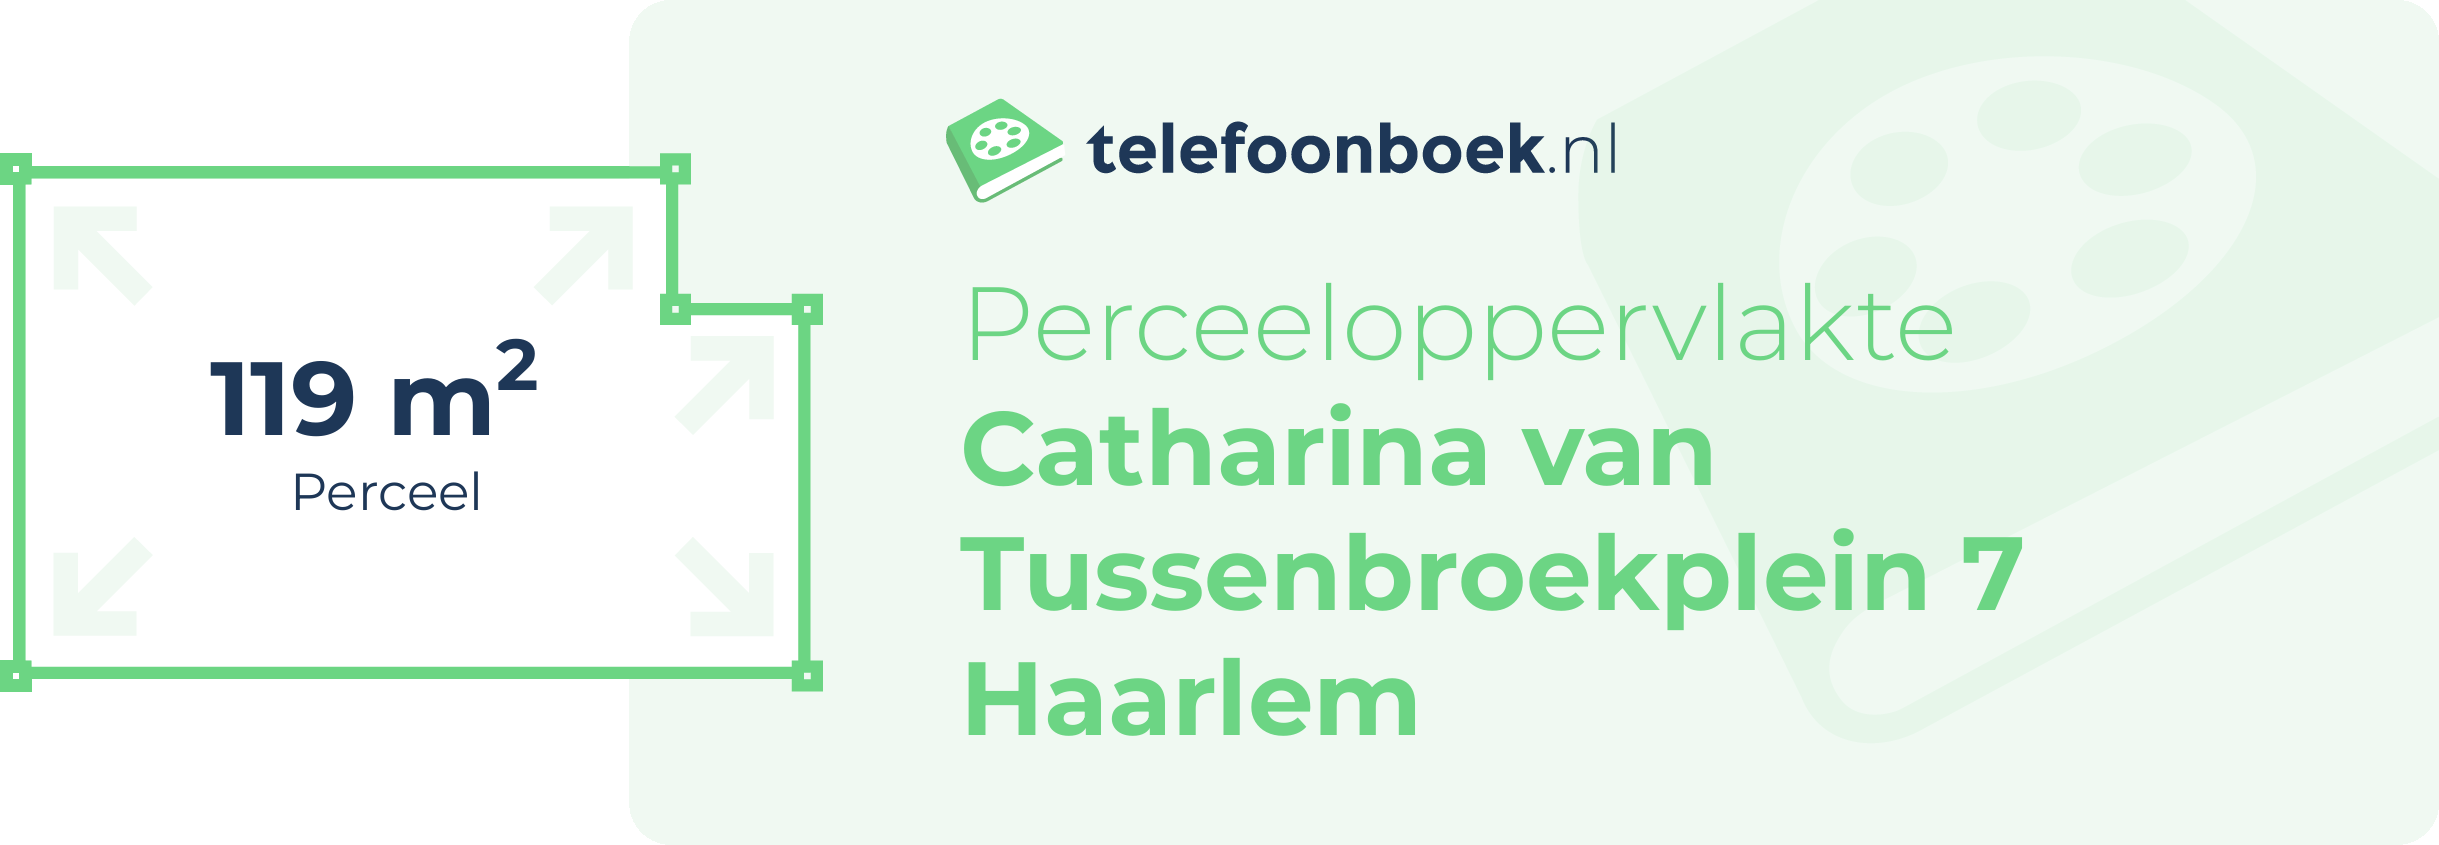 Perceeloppervlakte Catharina Van Tussenbroekplein 7 Haarlem